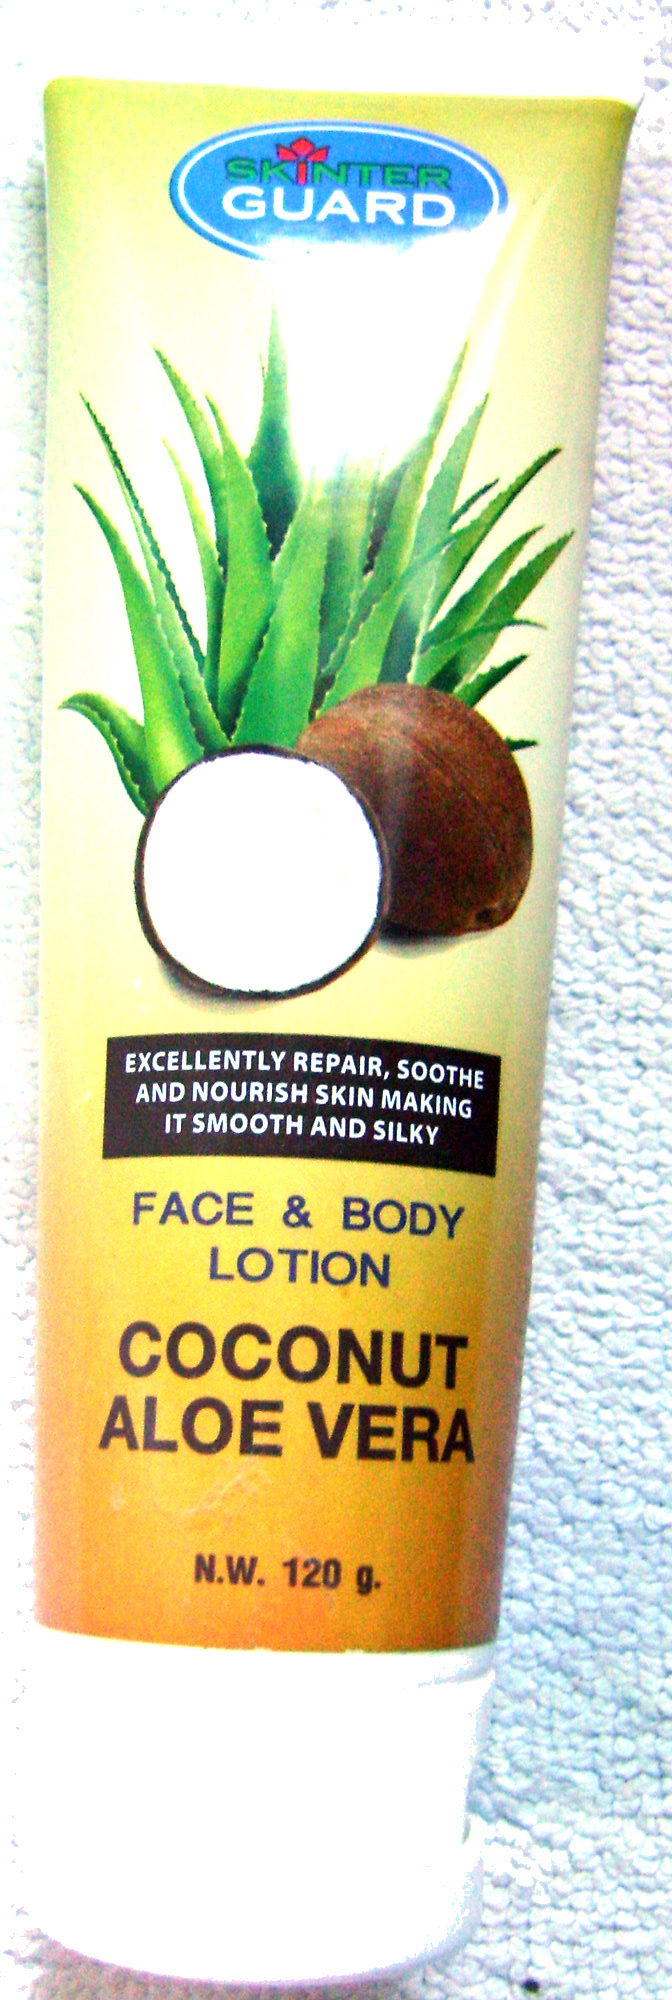 Face & body lotion Coconut Aloe Vera - Produto - fr